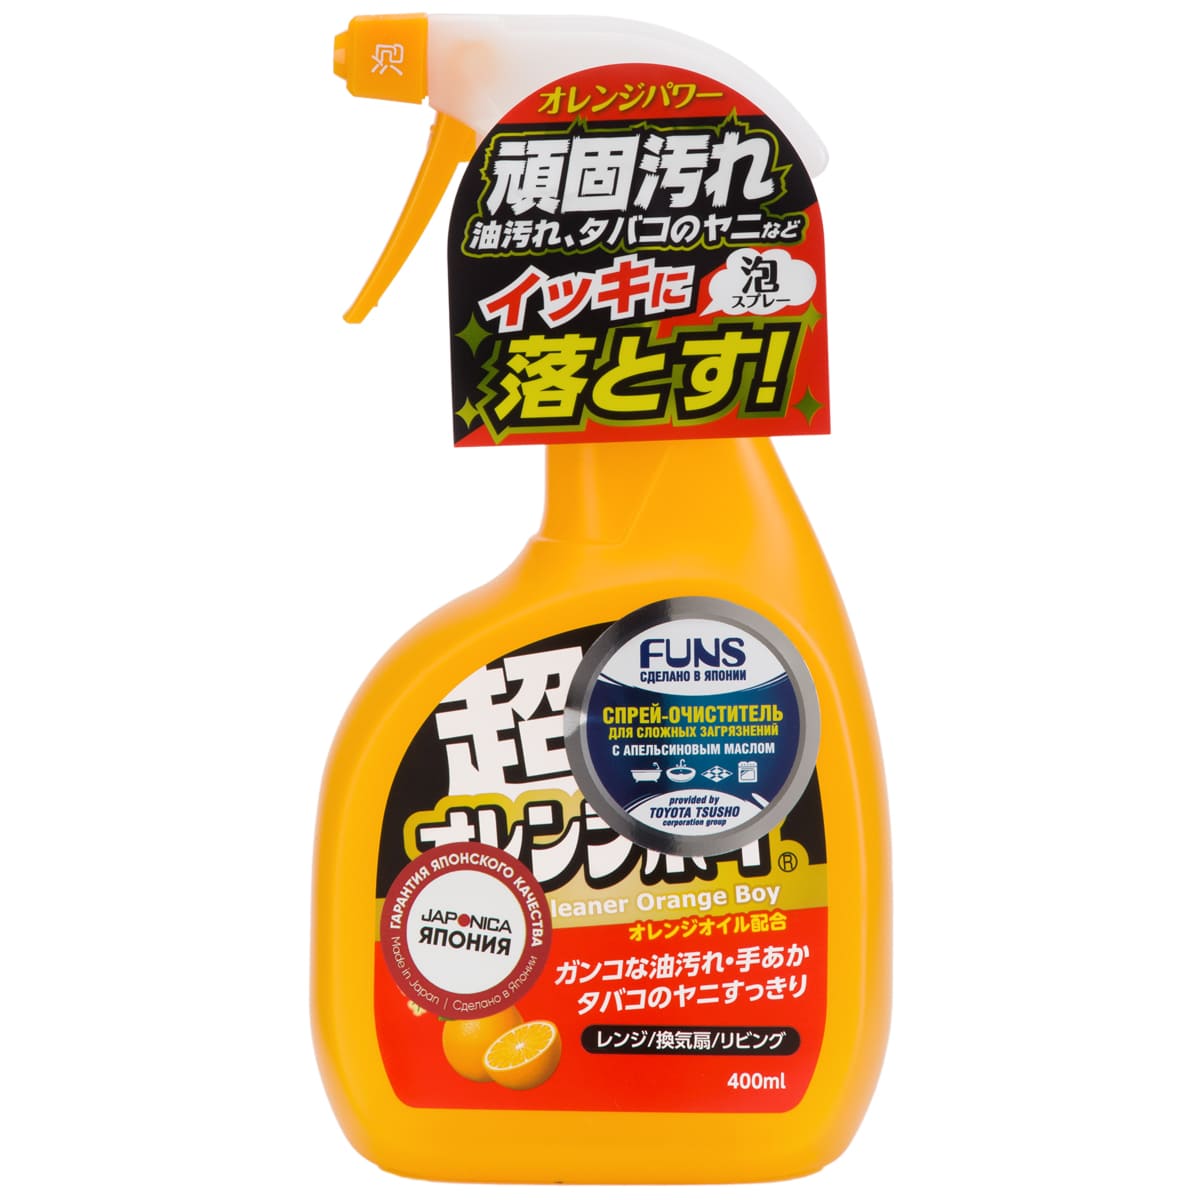 Funs Спрей-очиститель для дома сверхмощный с ароматом апельсина Orange Boy, 400 мл (Funs, Для уборки)